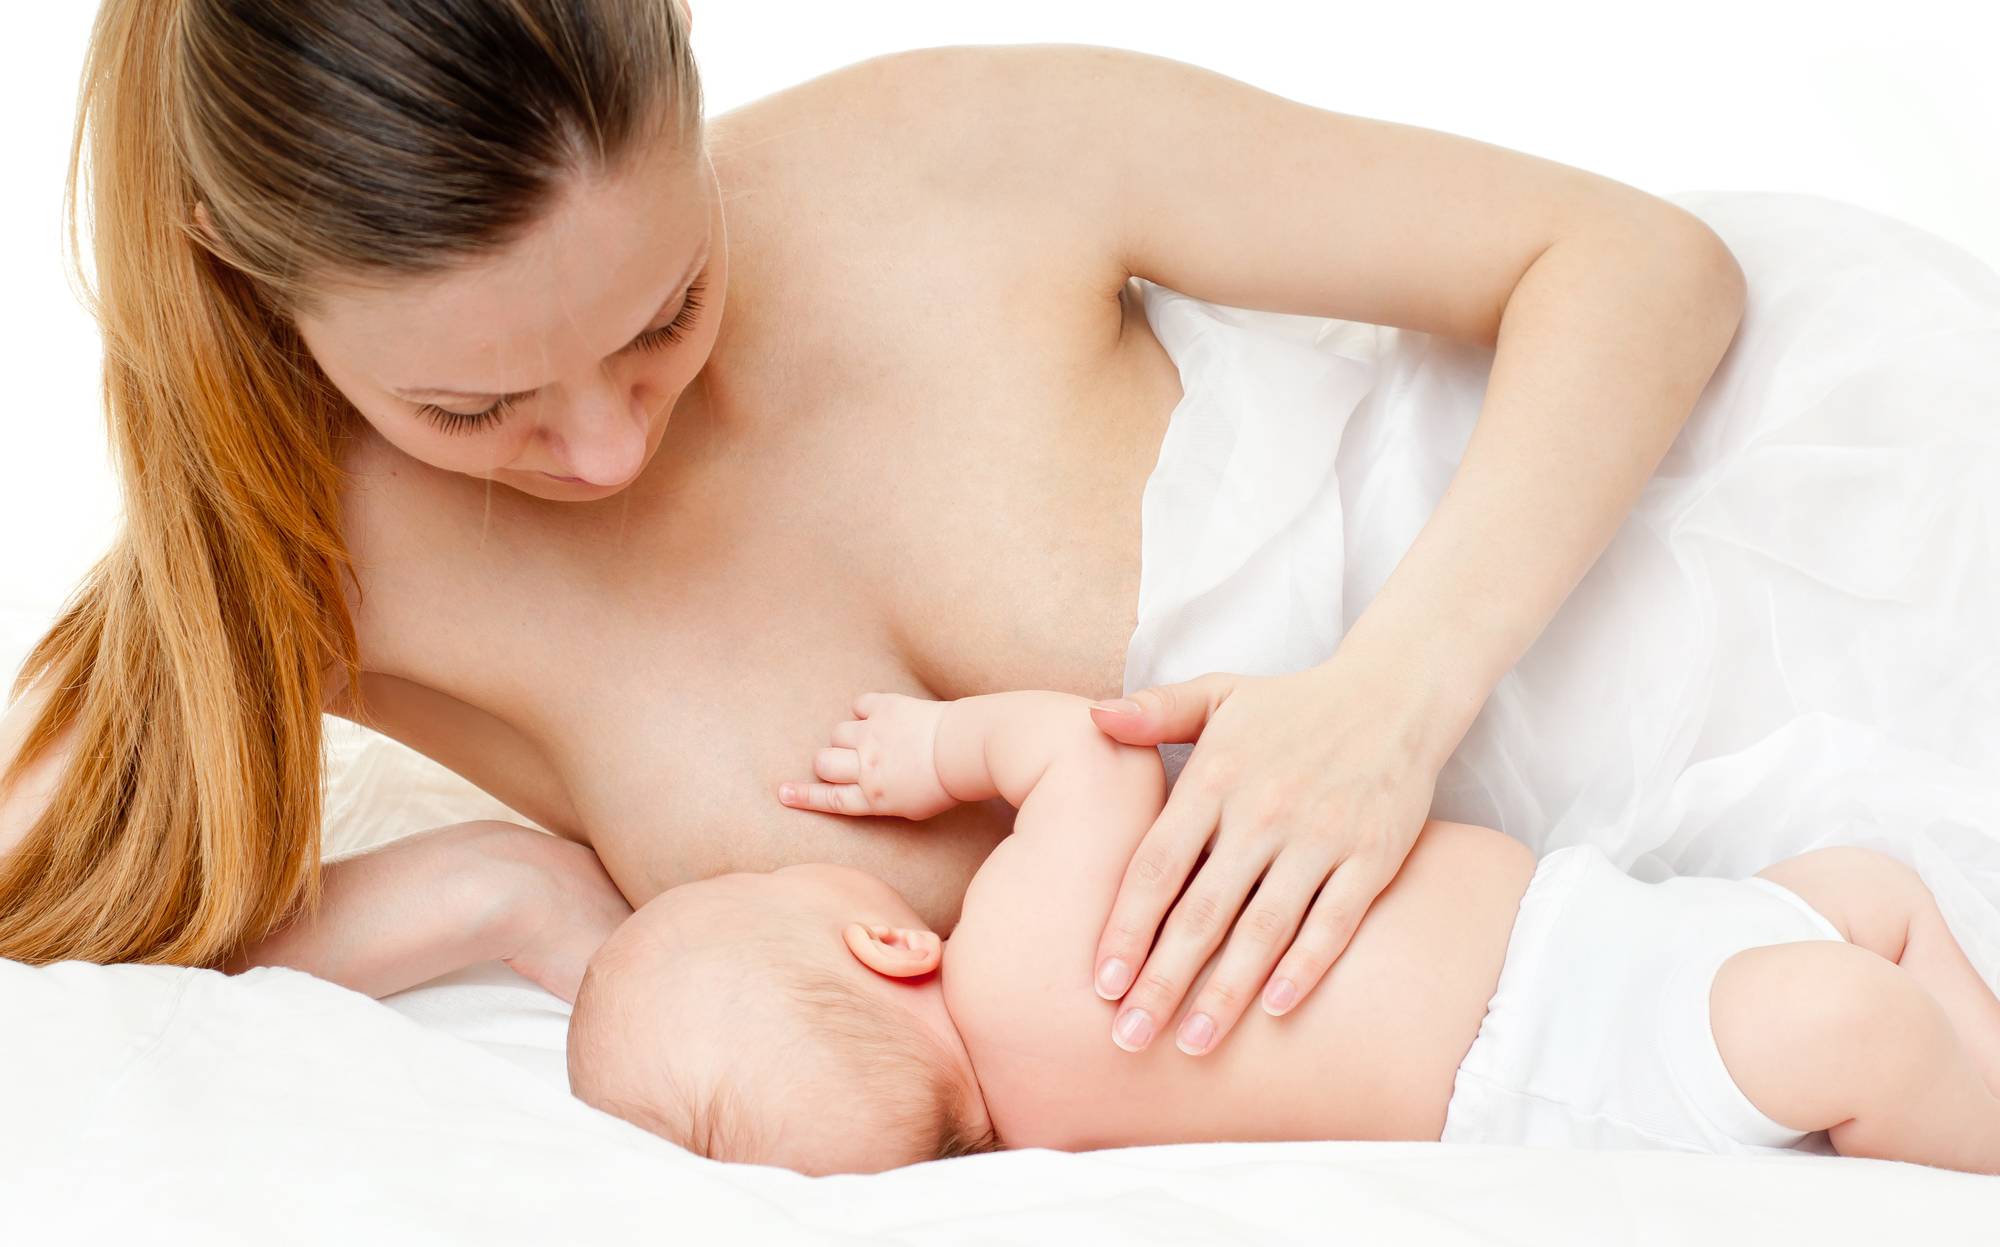 Узи молочных желез при грудном вскармливании: можно ли делать при лактации, показания у кормящей мамы и противопоказания, подготовка, стоимость